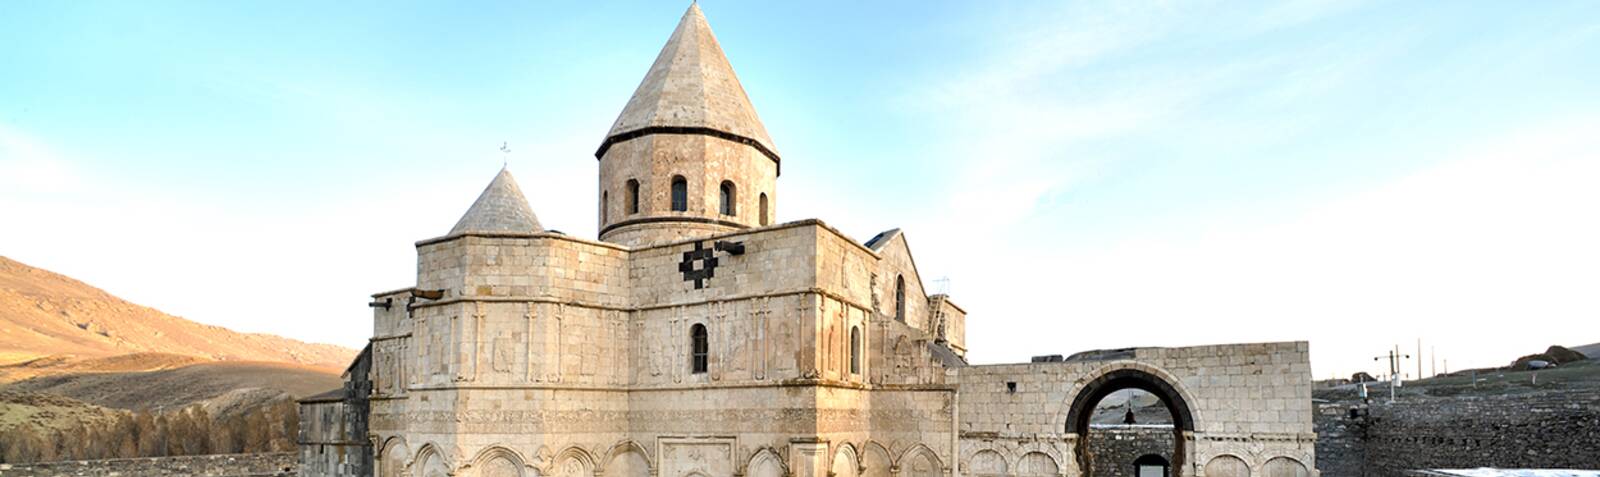 伊朗的亚美尼亚修道院群